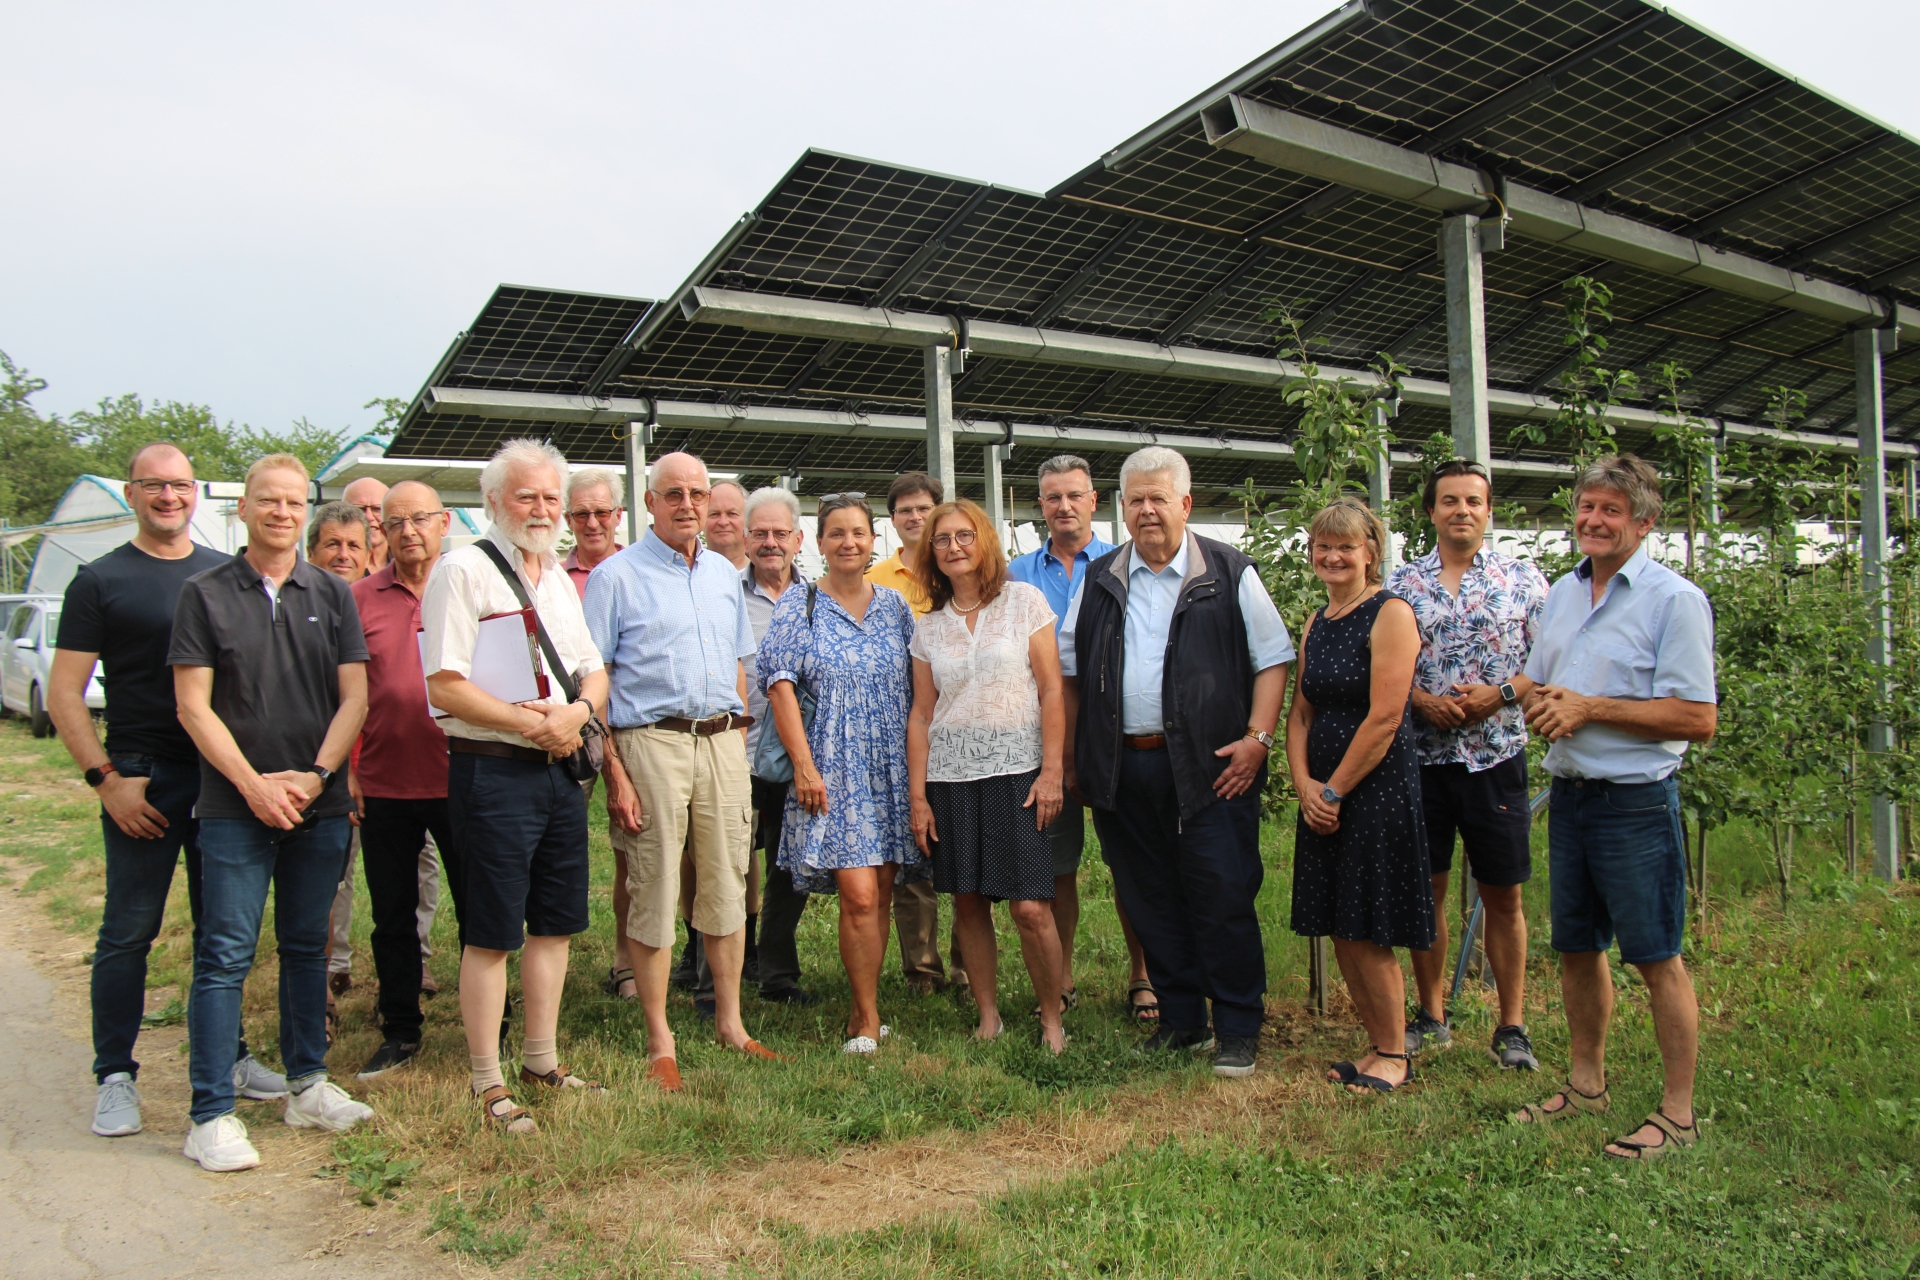 Foto: Roman Vallendor CDU-Fraktion - und der Vorstand der CDU Oberkirch informierten sich über PV-Anlagen von Dr.Vollmer/Intech in Oberkirch-Nußbach, die in das Forschungsprojekt „Modellregion des Landes“ aufgenommen sind.